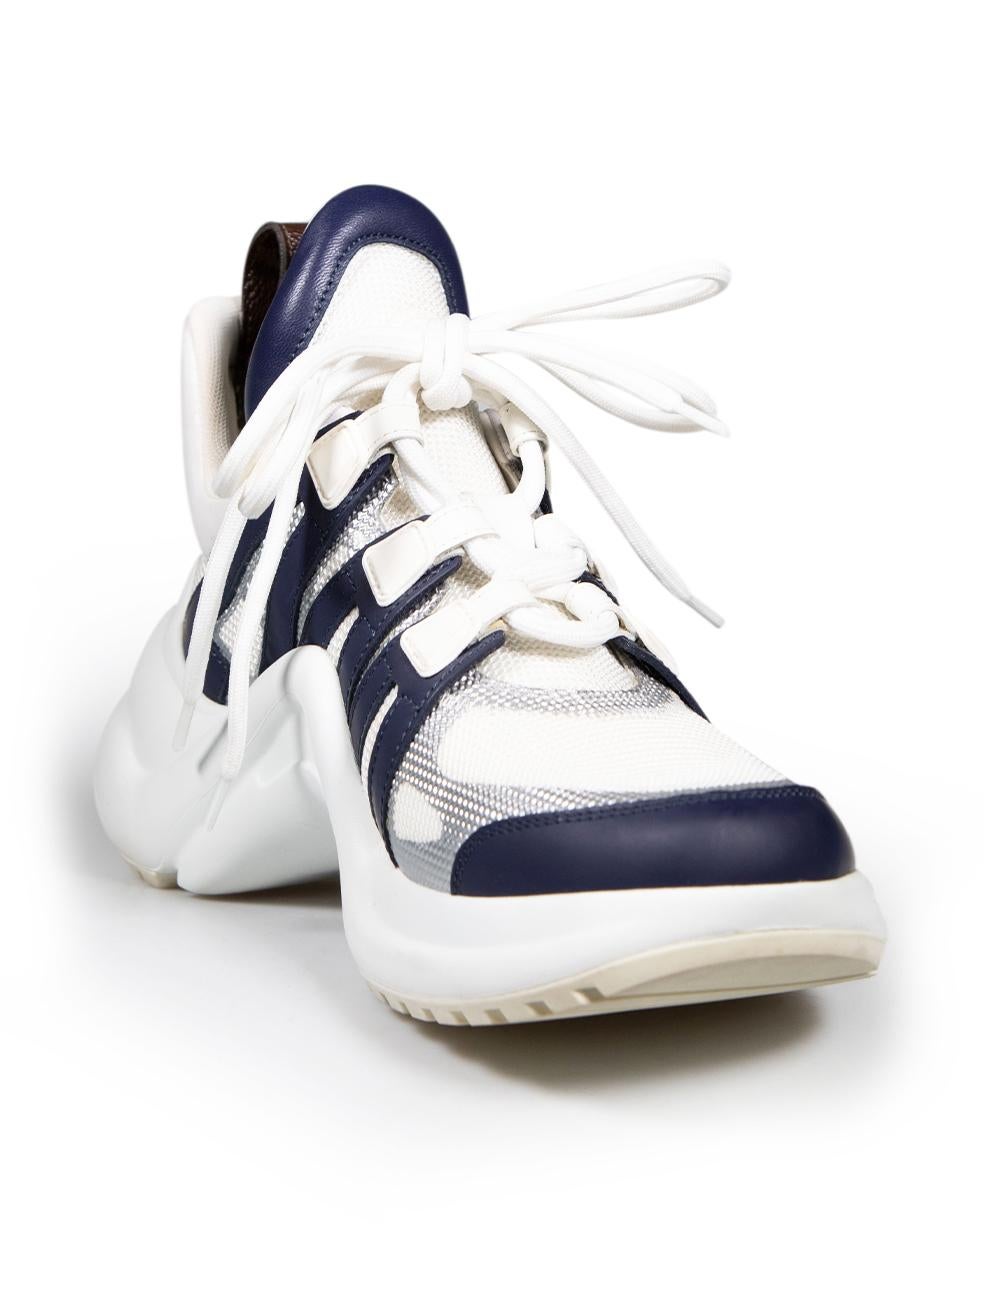 CONDIT ist sehr gut. Die Schuhe weisen minimale Abnutzungserscheinungen auf. Minimale Abnutzungserscheinungen an den Schnürsenkeln mit verfärbten Flecken auf diesem gebrauchten Louis Vuitton Designer-Wiederverkaufsartikel.
 
 Einzelheiten
 Modell: